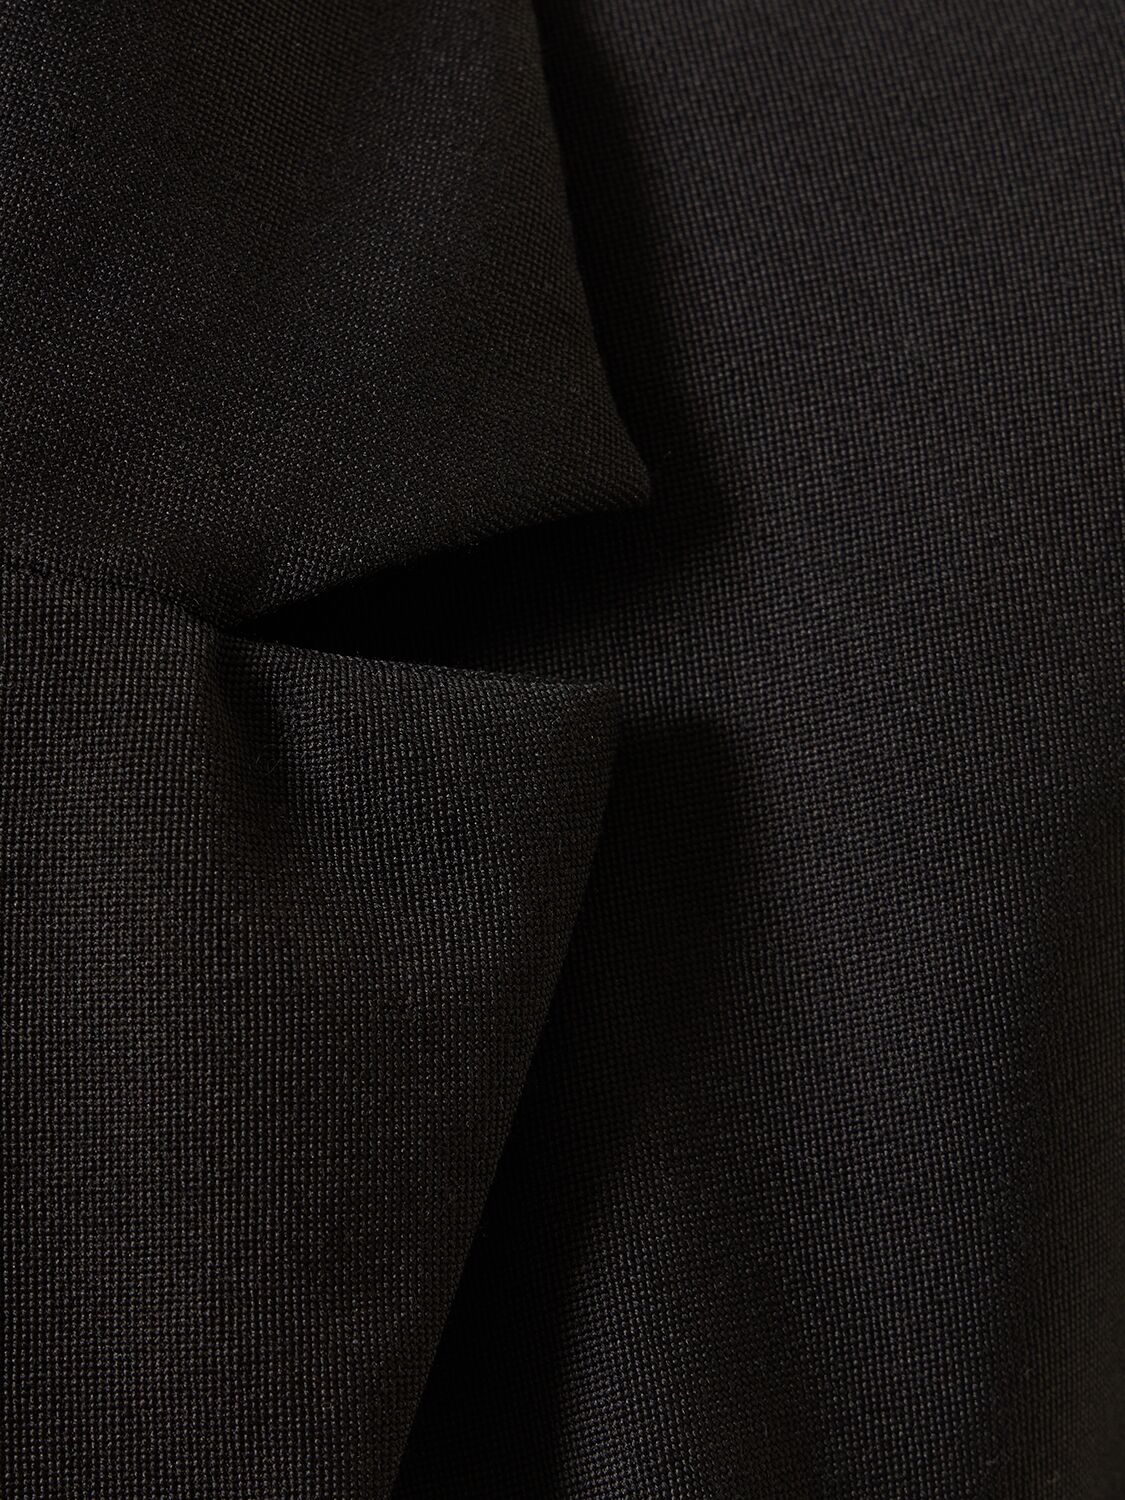 LA VESTE BAHIA羊毛绉纱短款夹克